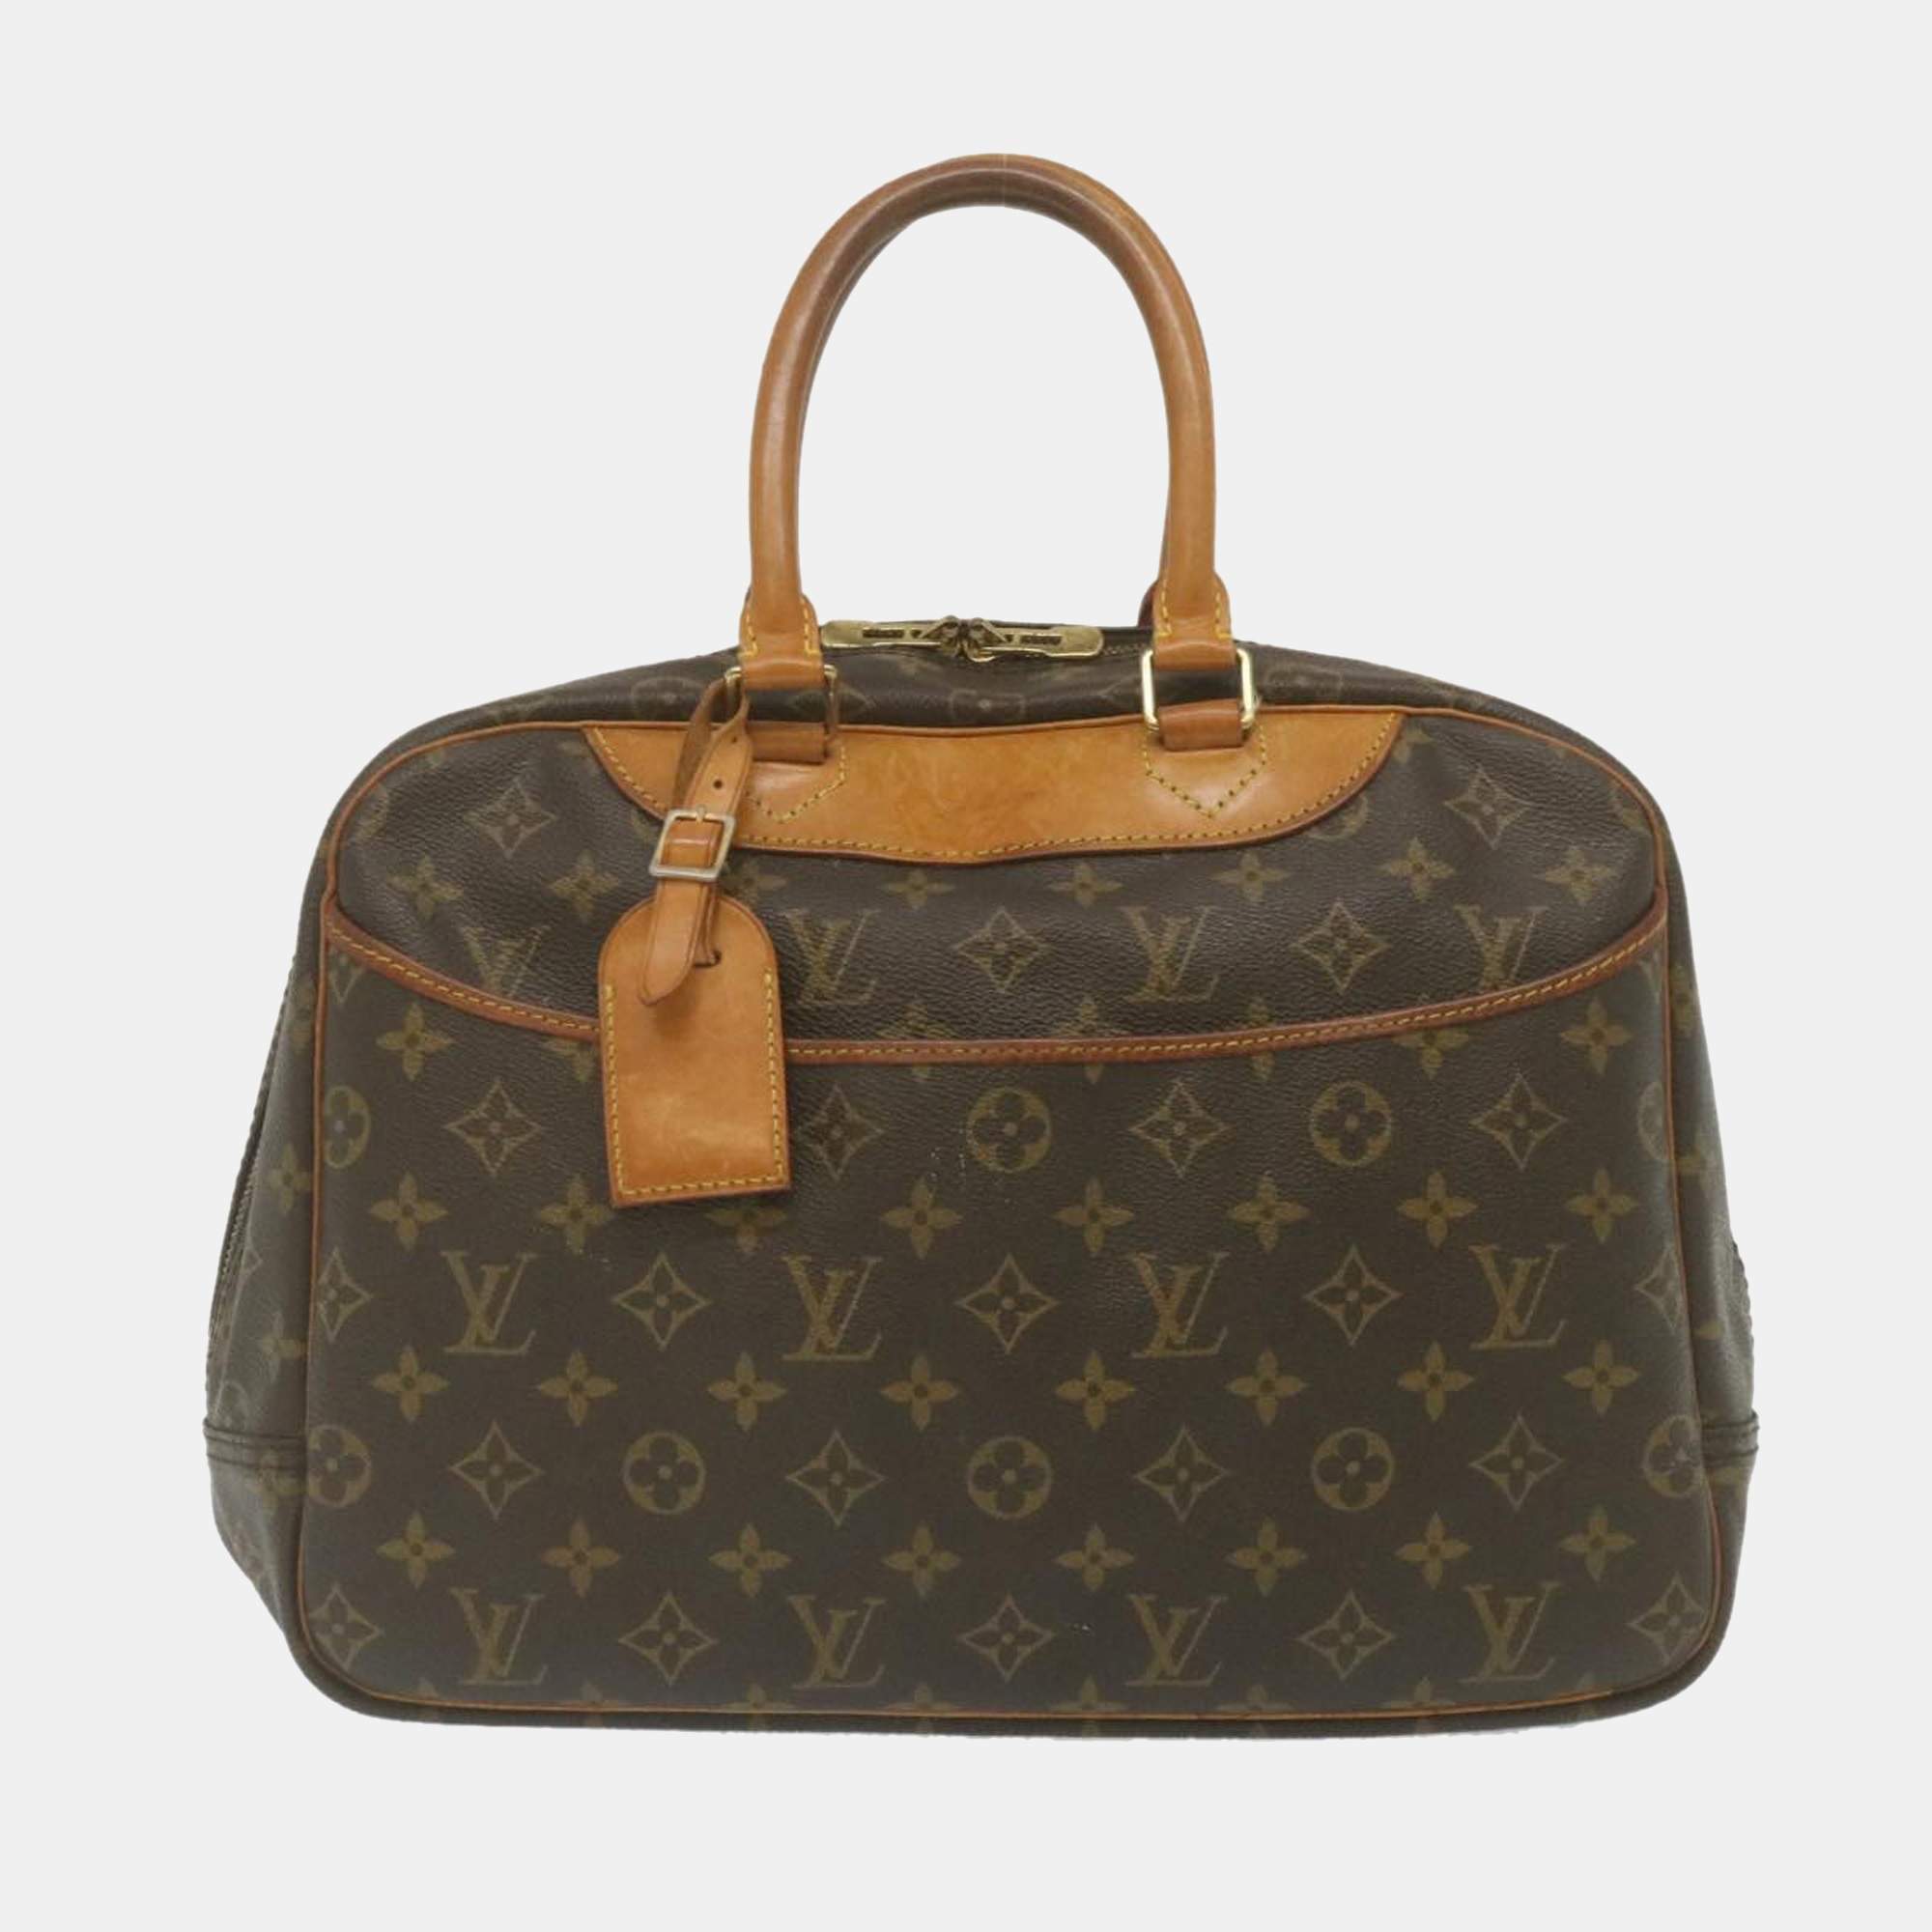 Authentic Louis Vuitton Deauville Hand bag M47270